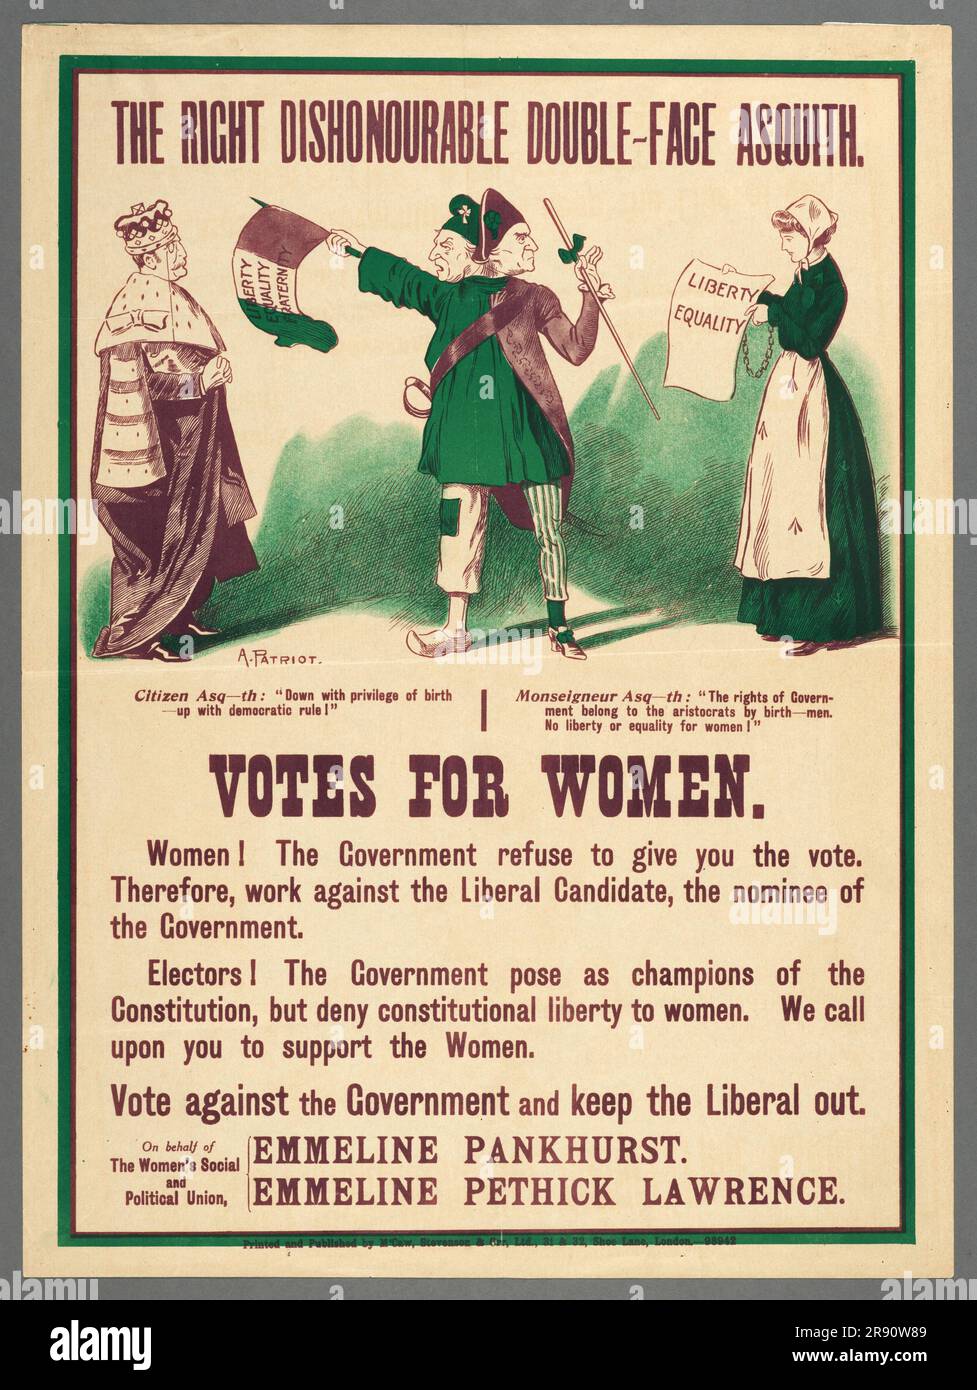 Une affiche ancienne de campagne électorale qui dit aux gens d'éviter de voter pour la très honorable Double-face Asquith pendant la campagne votes pour les femmes. Il est émis au nom d'Emmeline Pankhurst et d'Emmeline Lawrence. Banque D'Images